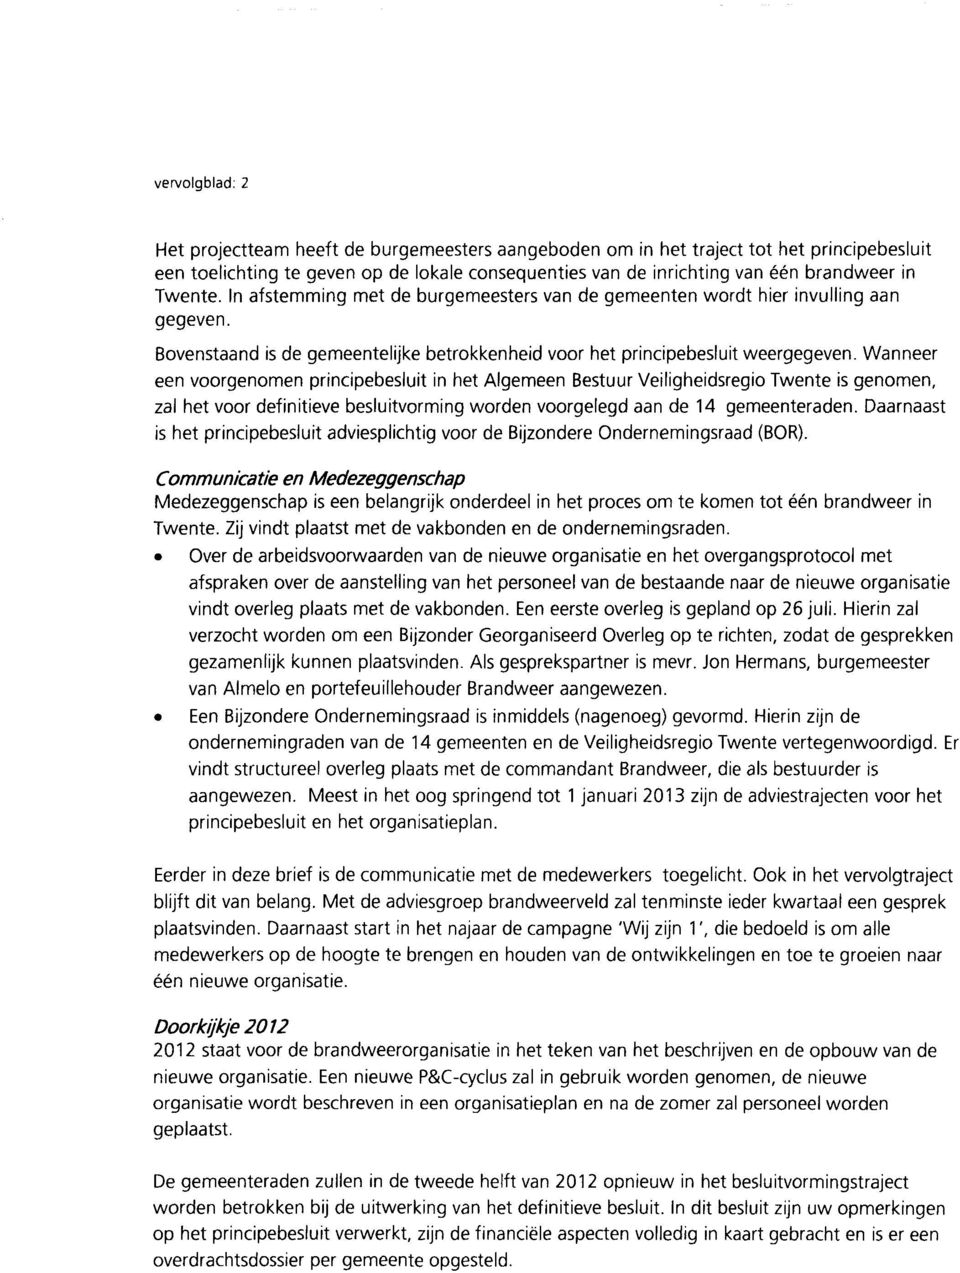 Wanneer een voorgenomen principebesluit in het Algemeen Bestuur Veiligheidsregio Twente is genomen, zal het voor definitieve besluitvorming worden voorgelegd aan de 14 gemeenteraden.